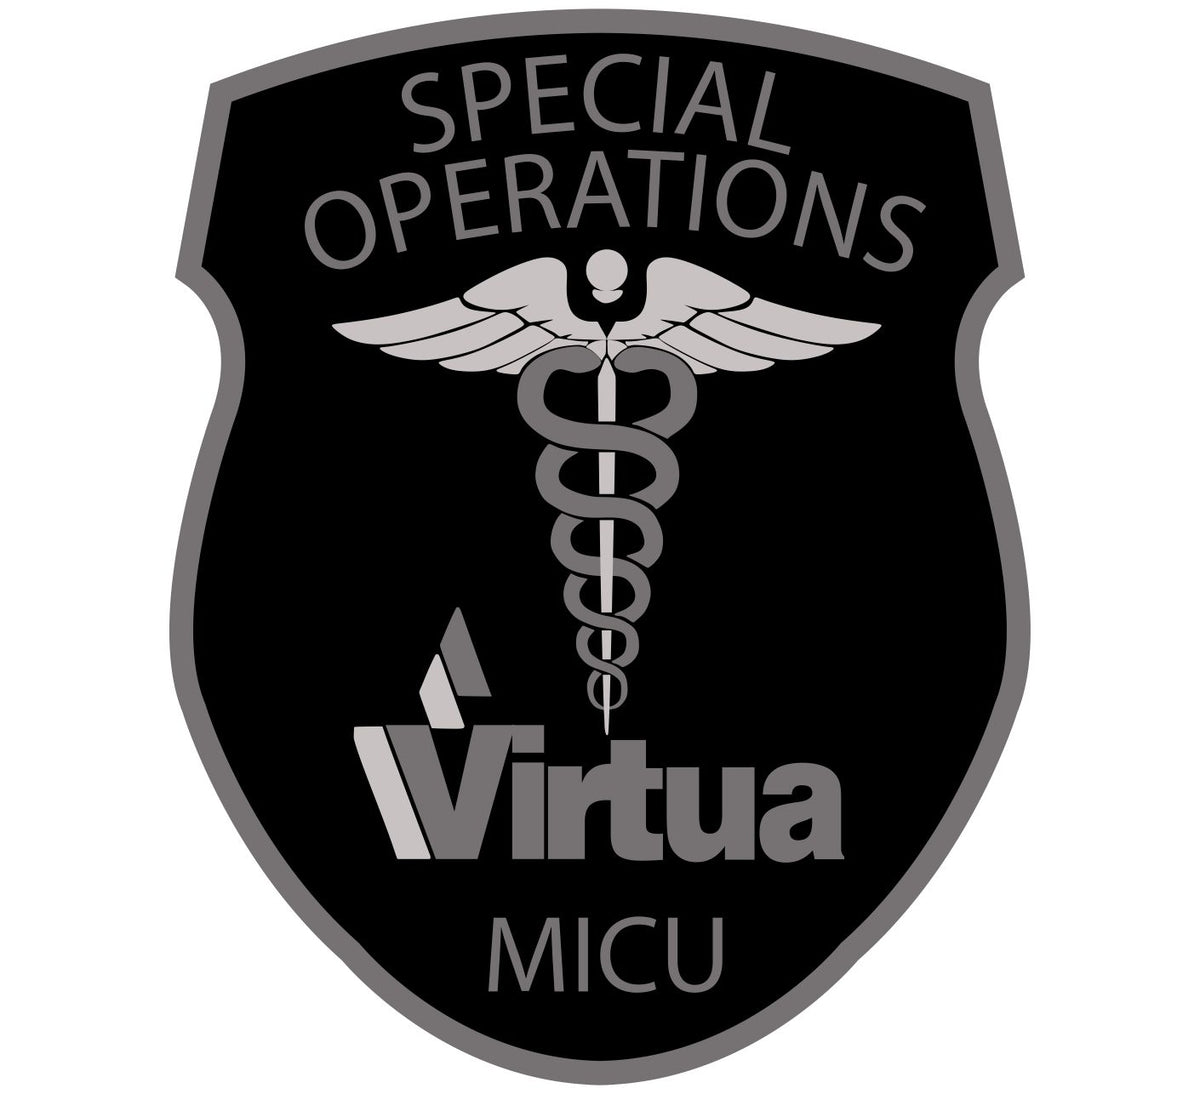 Virtua MICU Special Operations Decal 060617